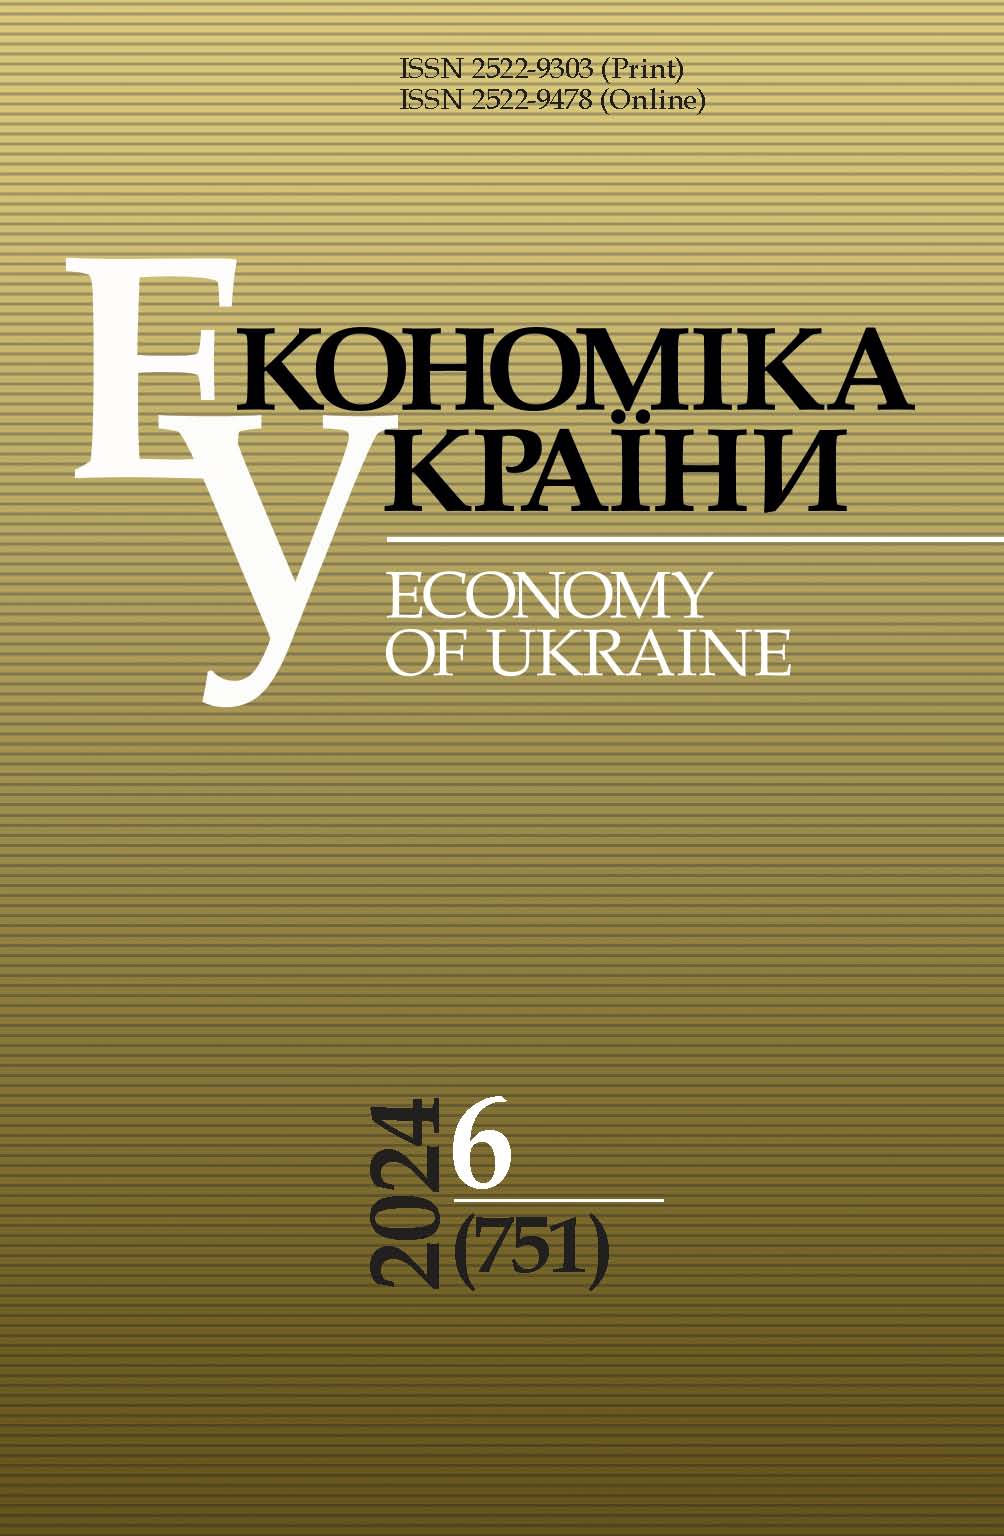 					View Vol. 67 No. 6 (751) (2024): Economy of Ukraine
				